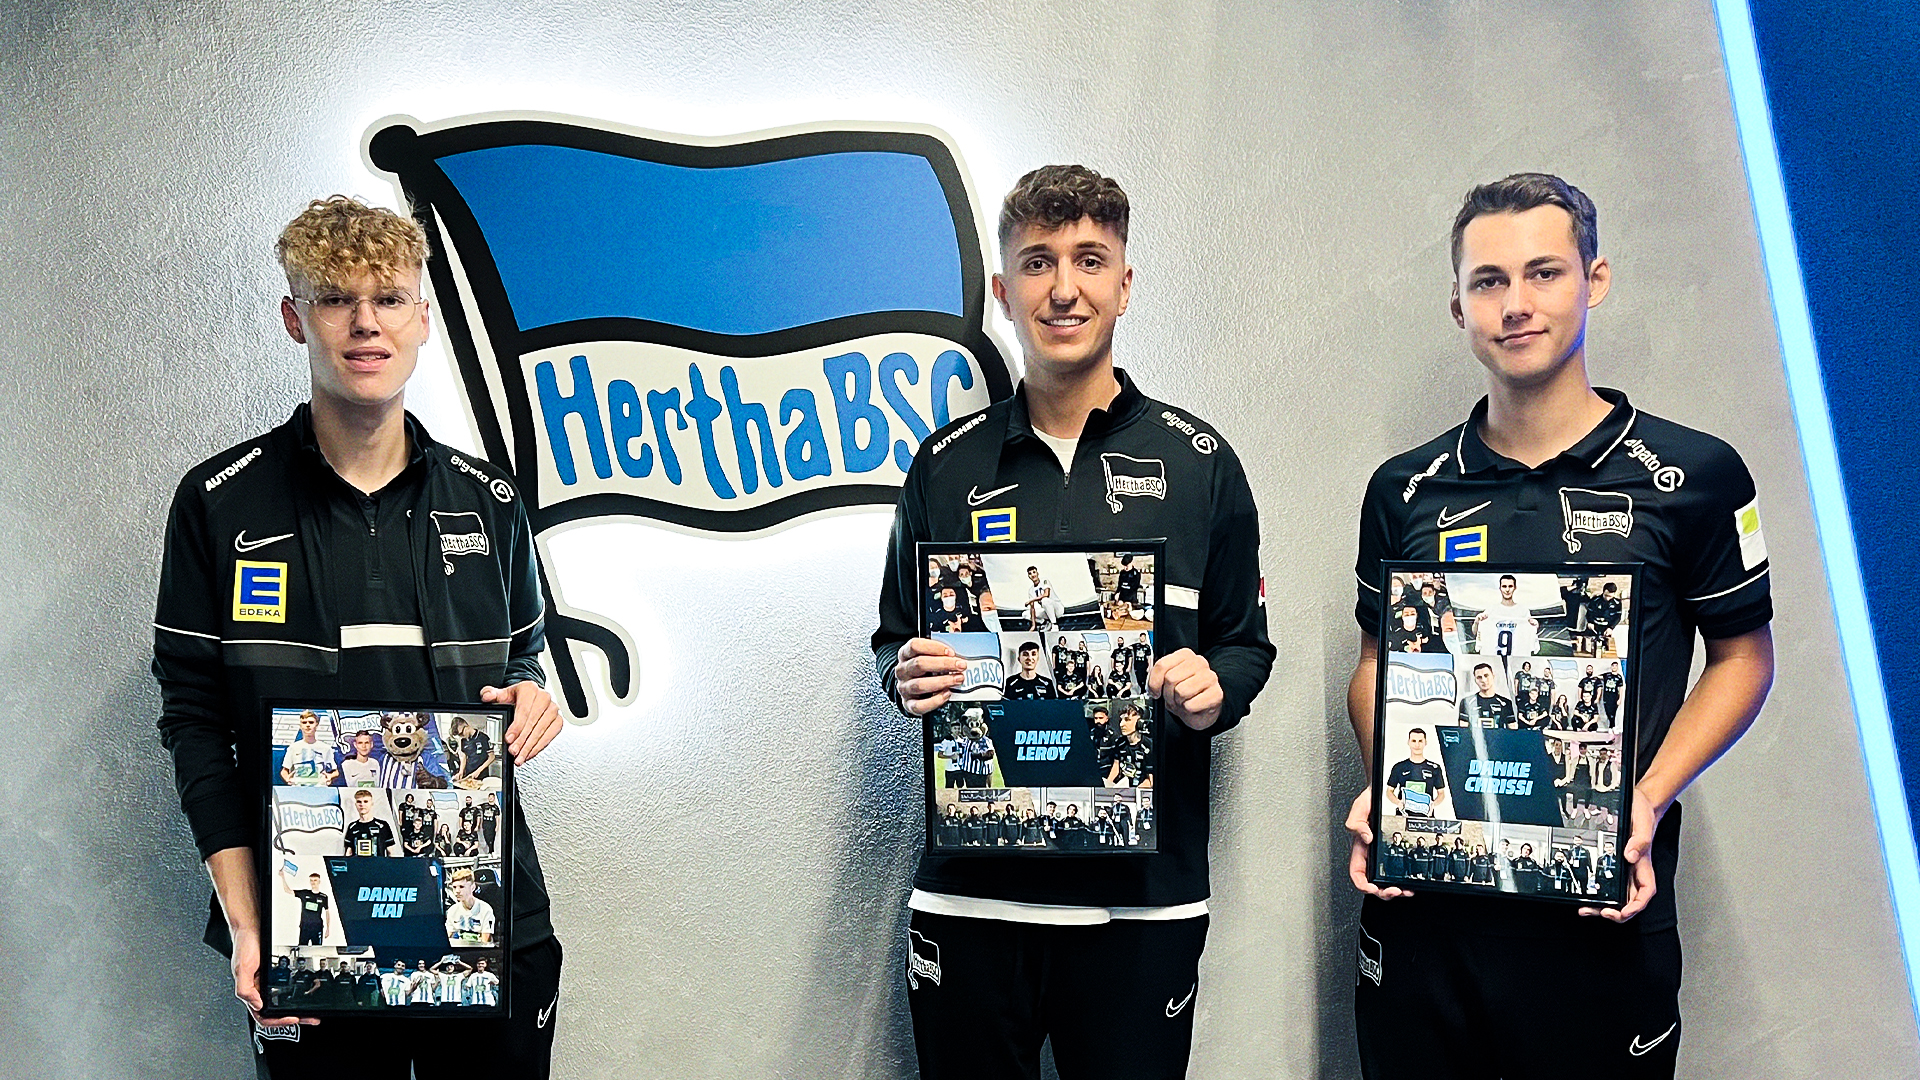 Kai Bayer, Leroy Richter und Christoph Strietzel posieren zum Abschied vor der Hertha-Fahne.